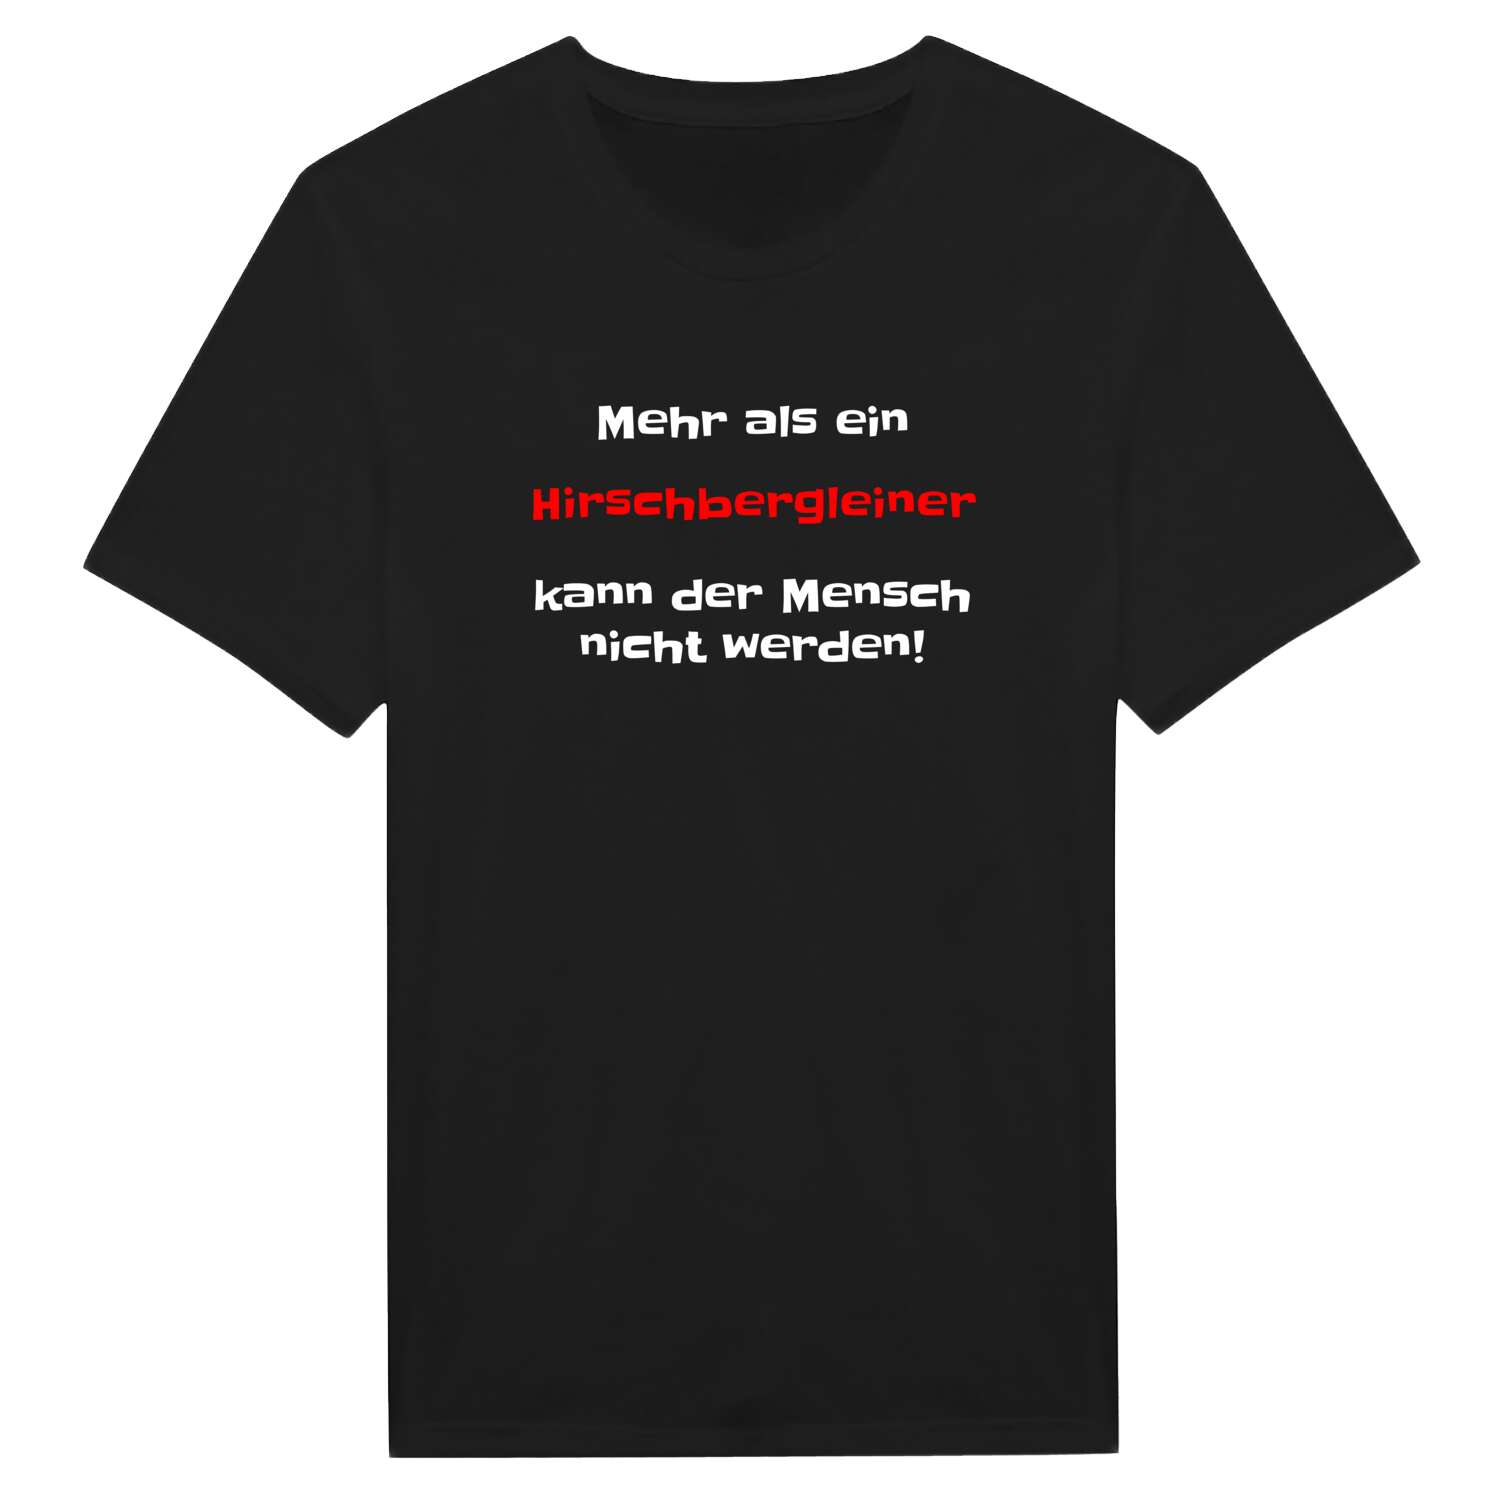 Hirschberglein T-Shirt »Mehr als ein«